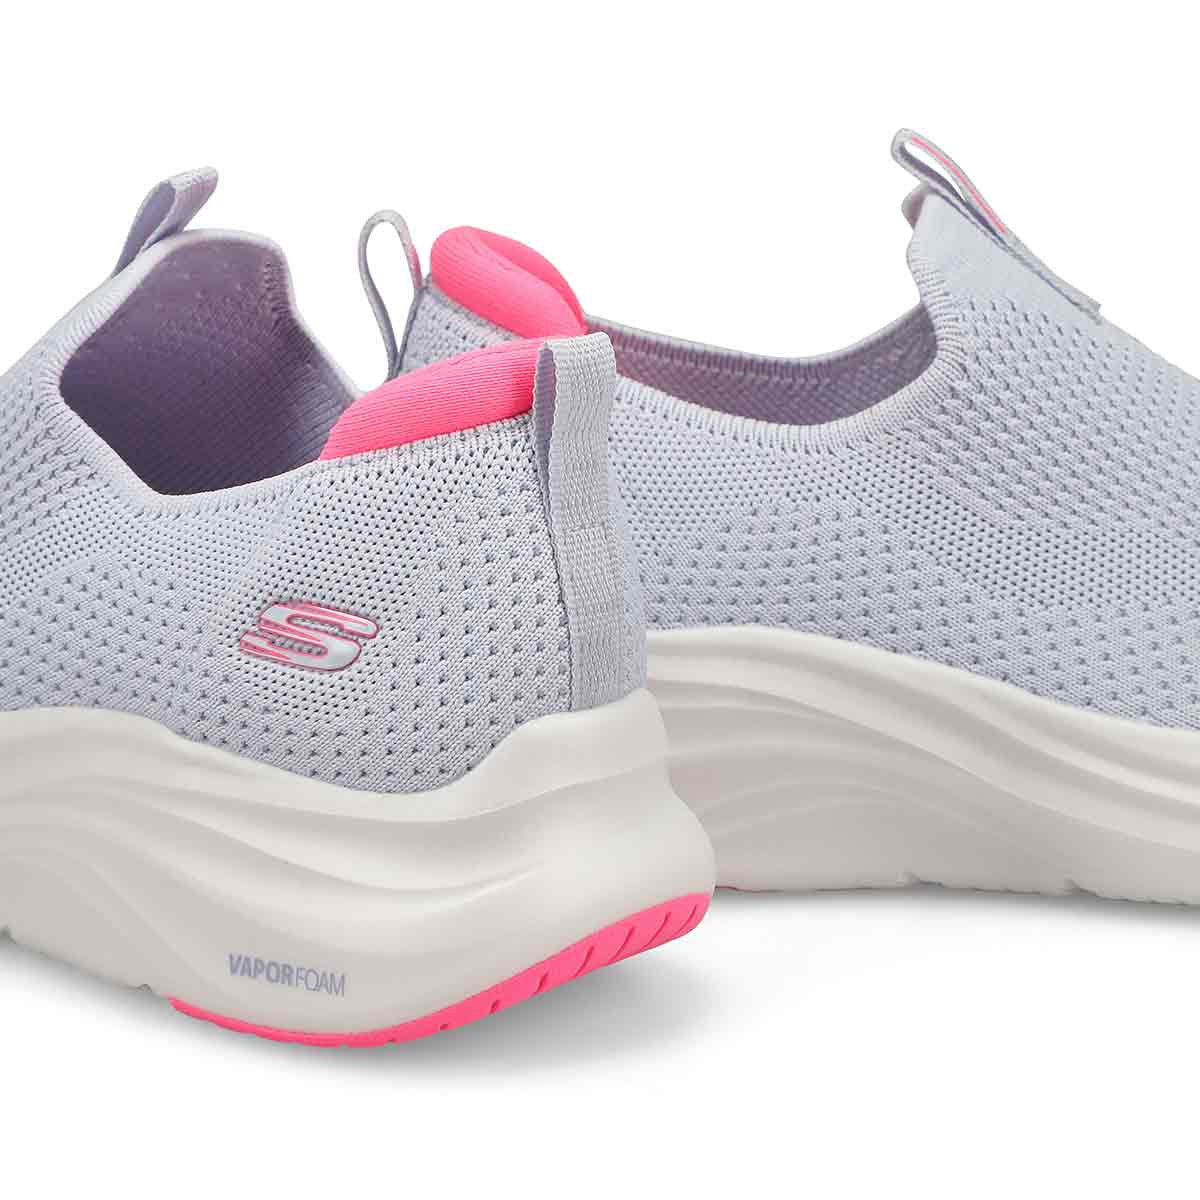 Women's Vapor Foam Slip On Sneaker - Light Blue/Pink